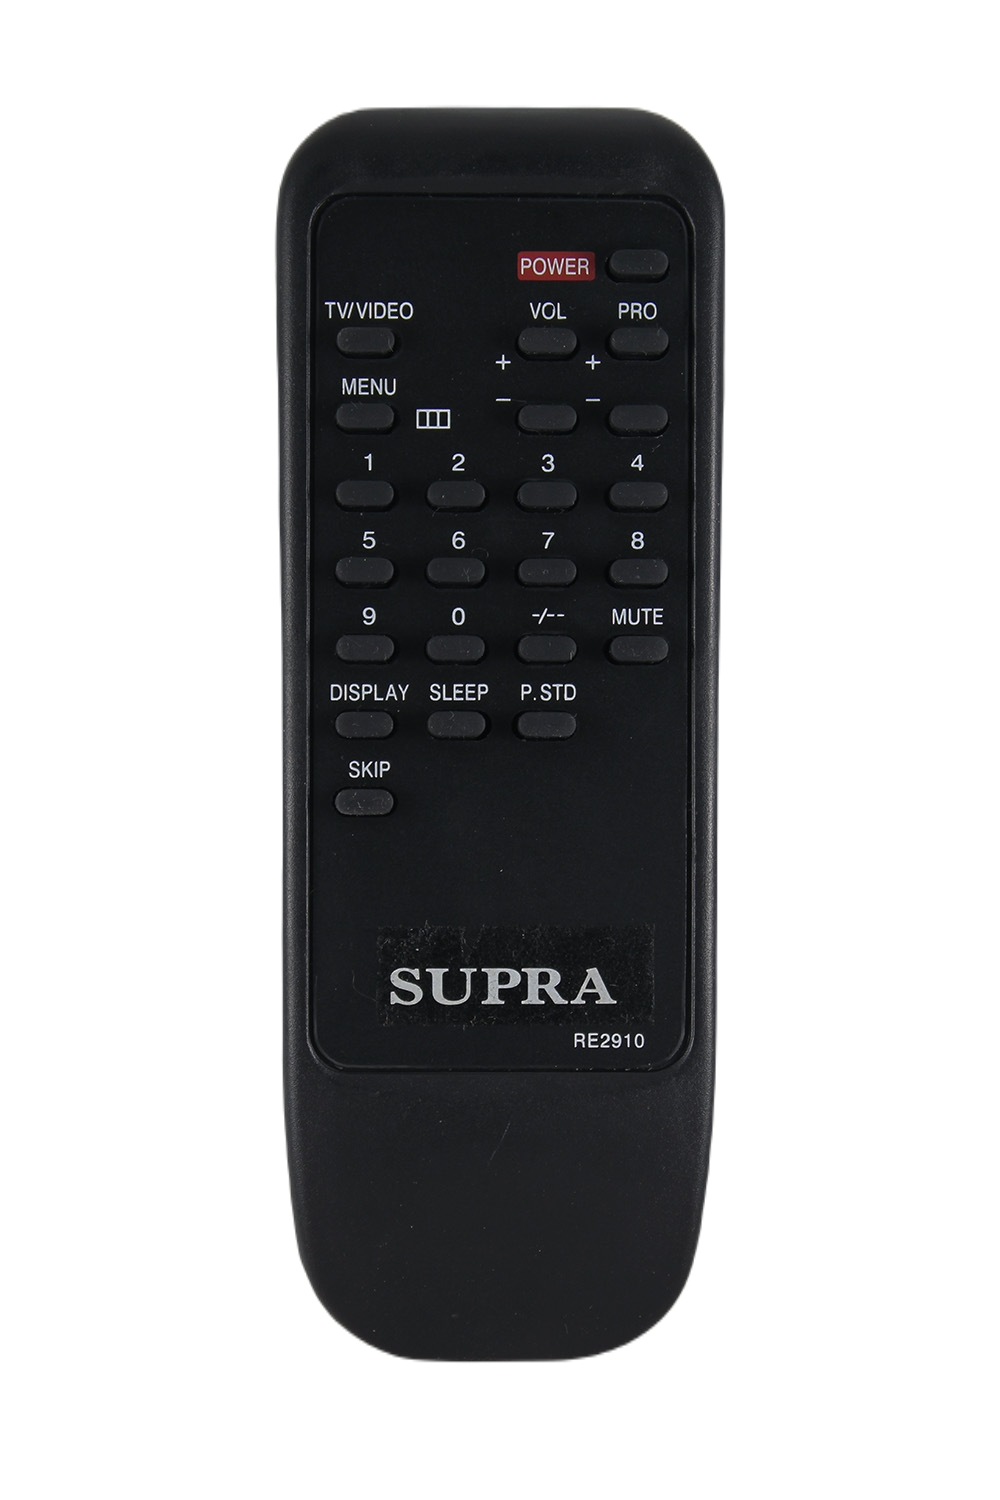 Пульт для телевизора Supra RE-2910, фото